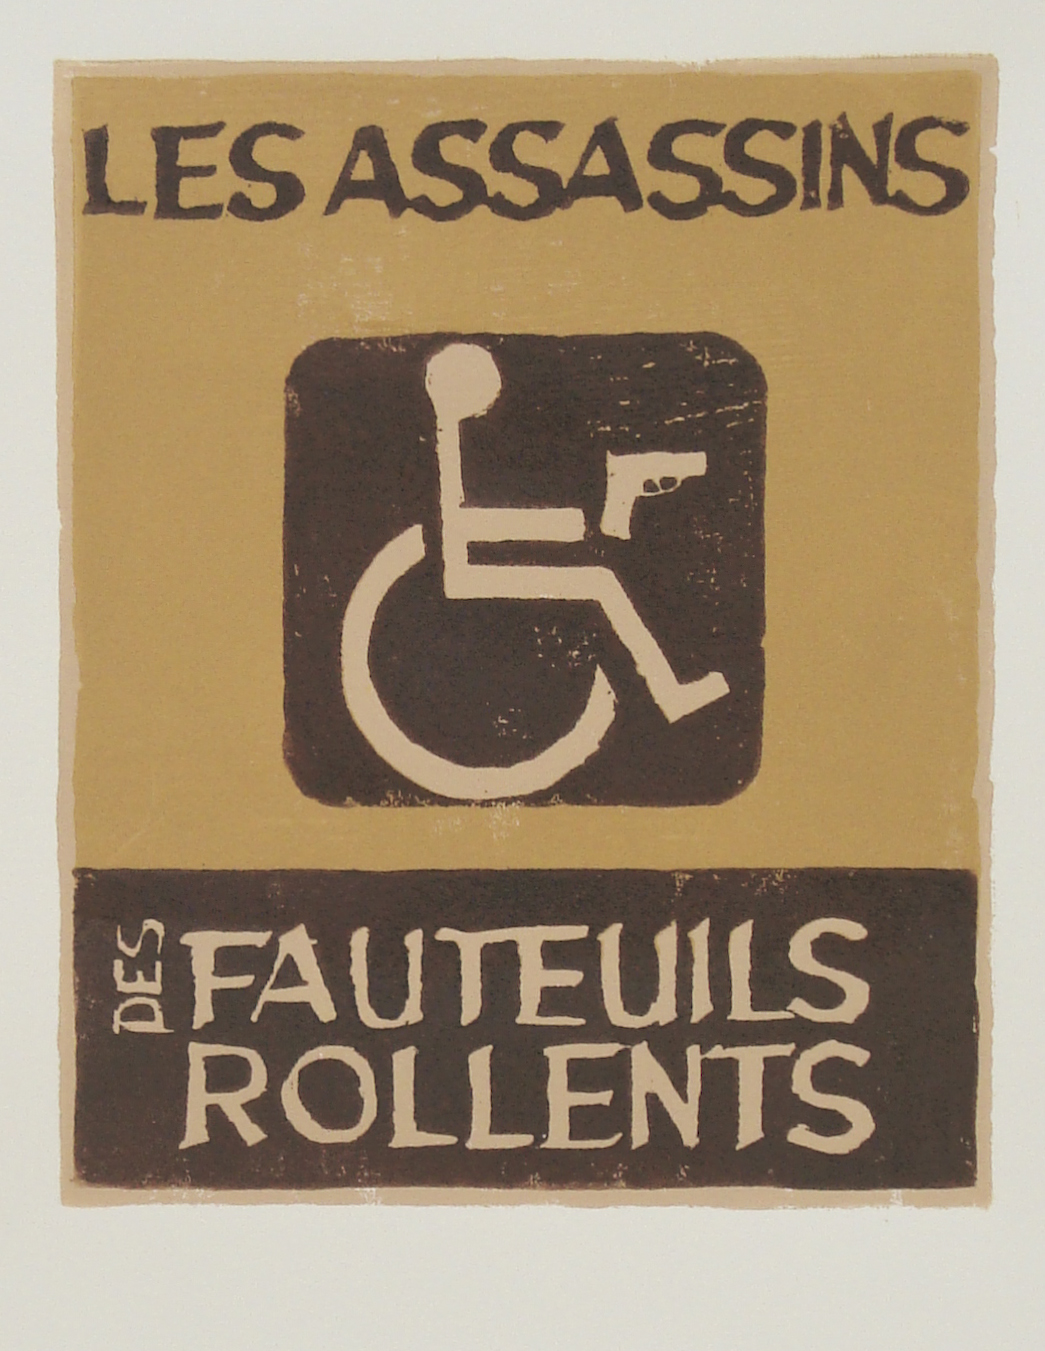   Les Assassins des Fauteuils Rollents   reductive woodblock print  edition of 11  8x10" 